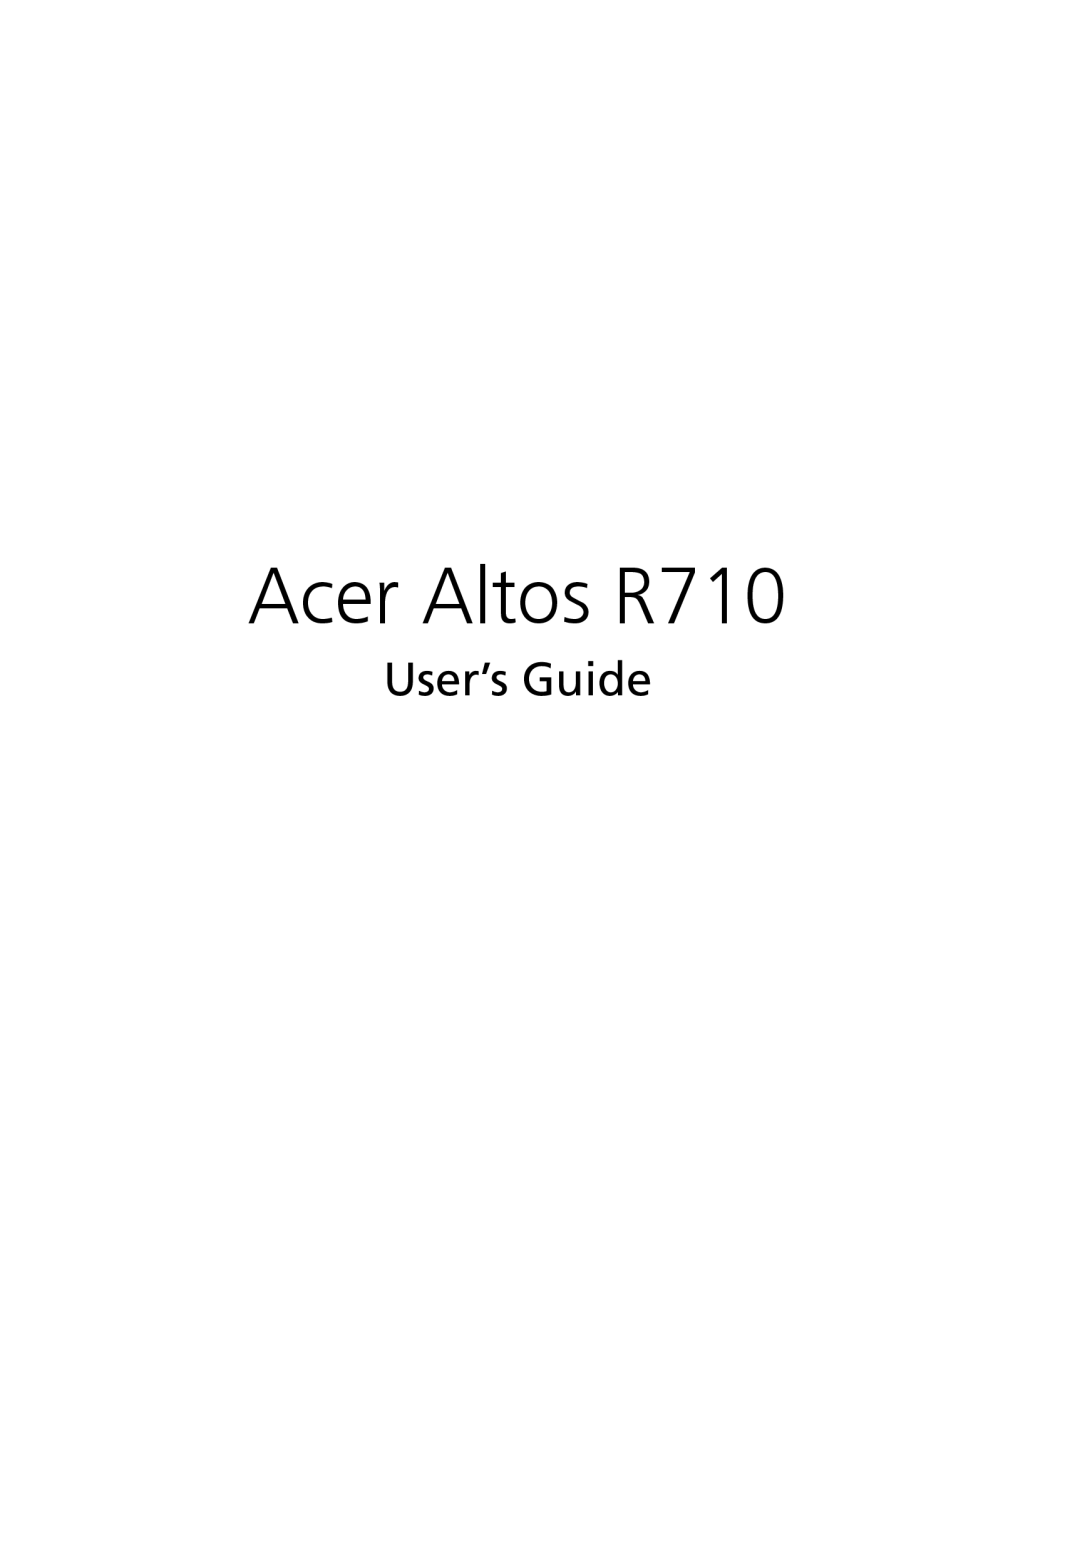 Acer manual Acer Altos R710, User’s Guide 